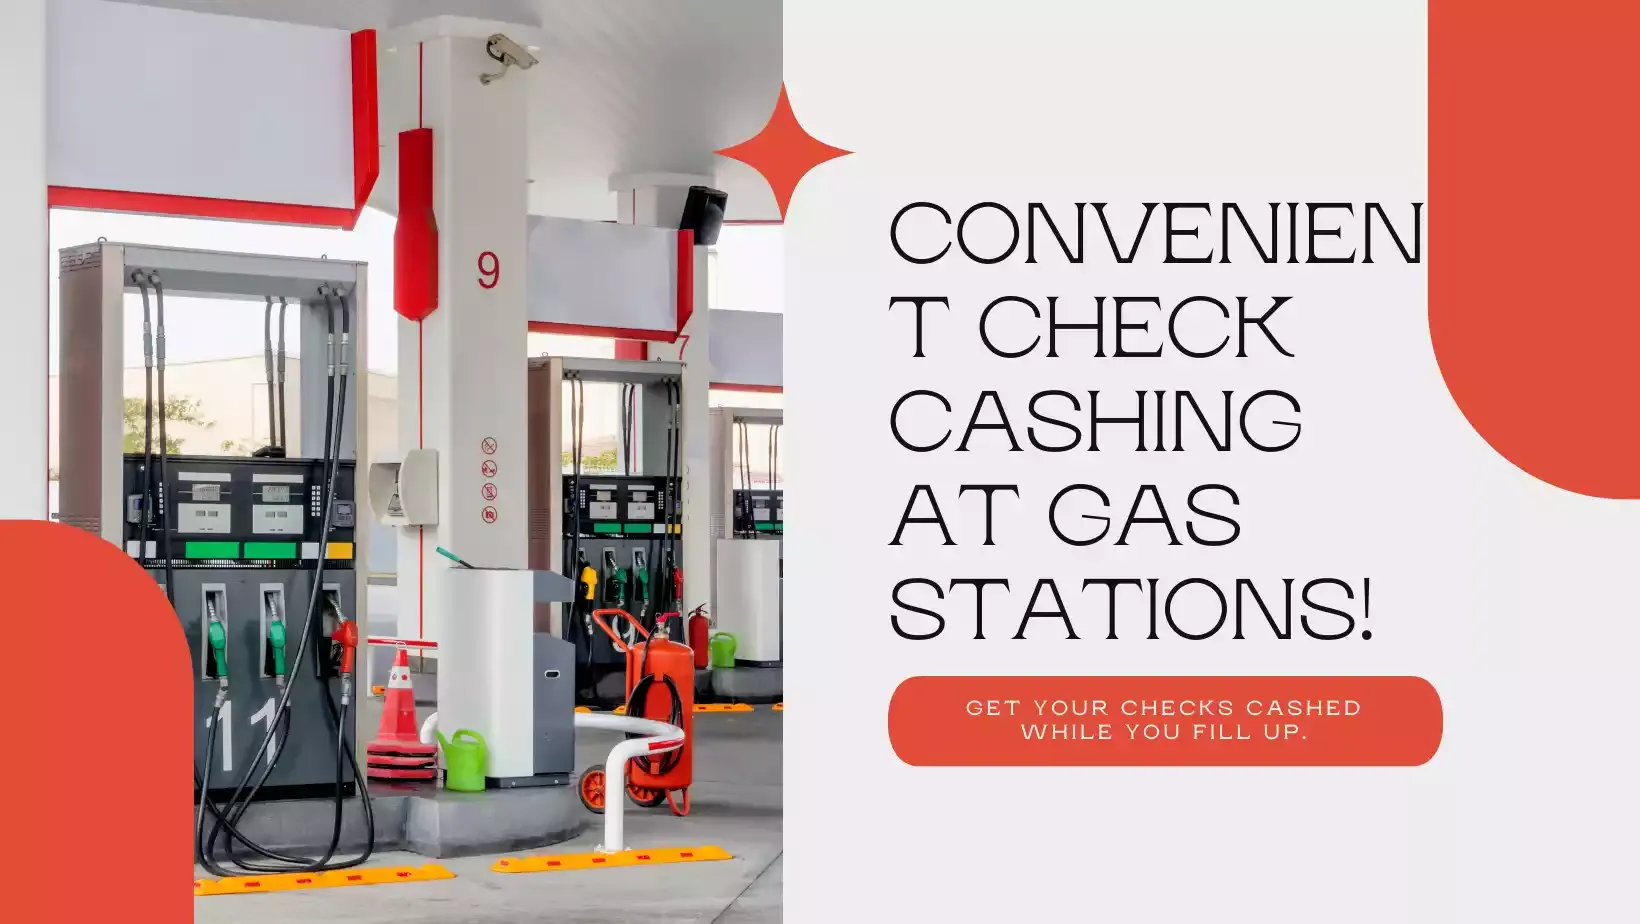 Gas Stations that Cash Checks